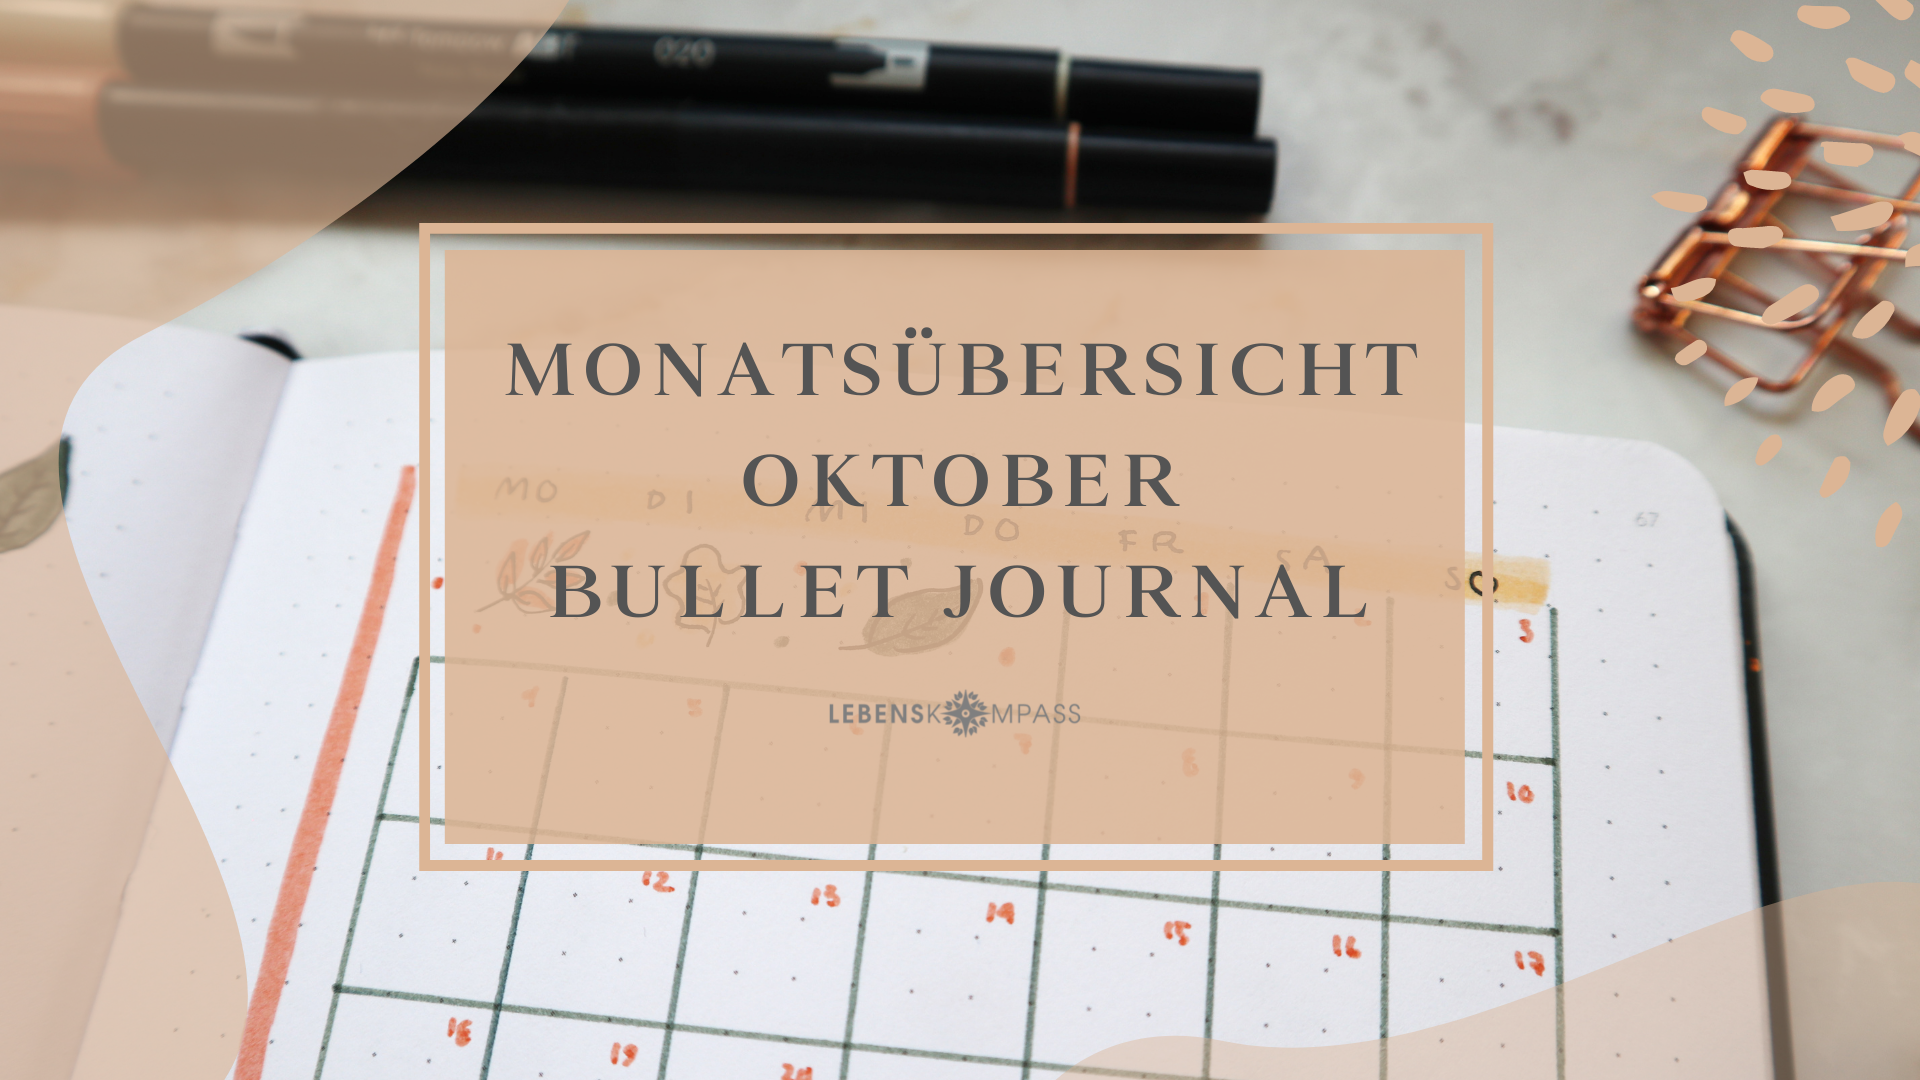 Bullet Journal Oktober: Herbstliche Monatsübersicht gestalten